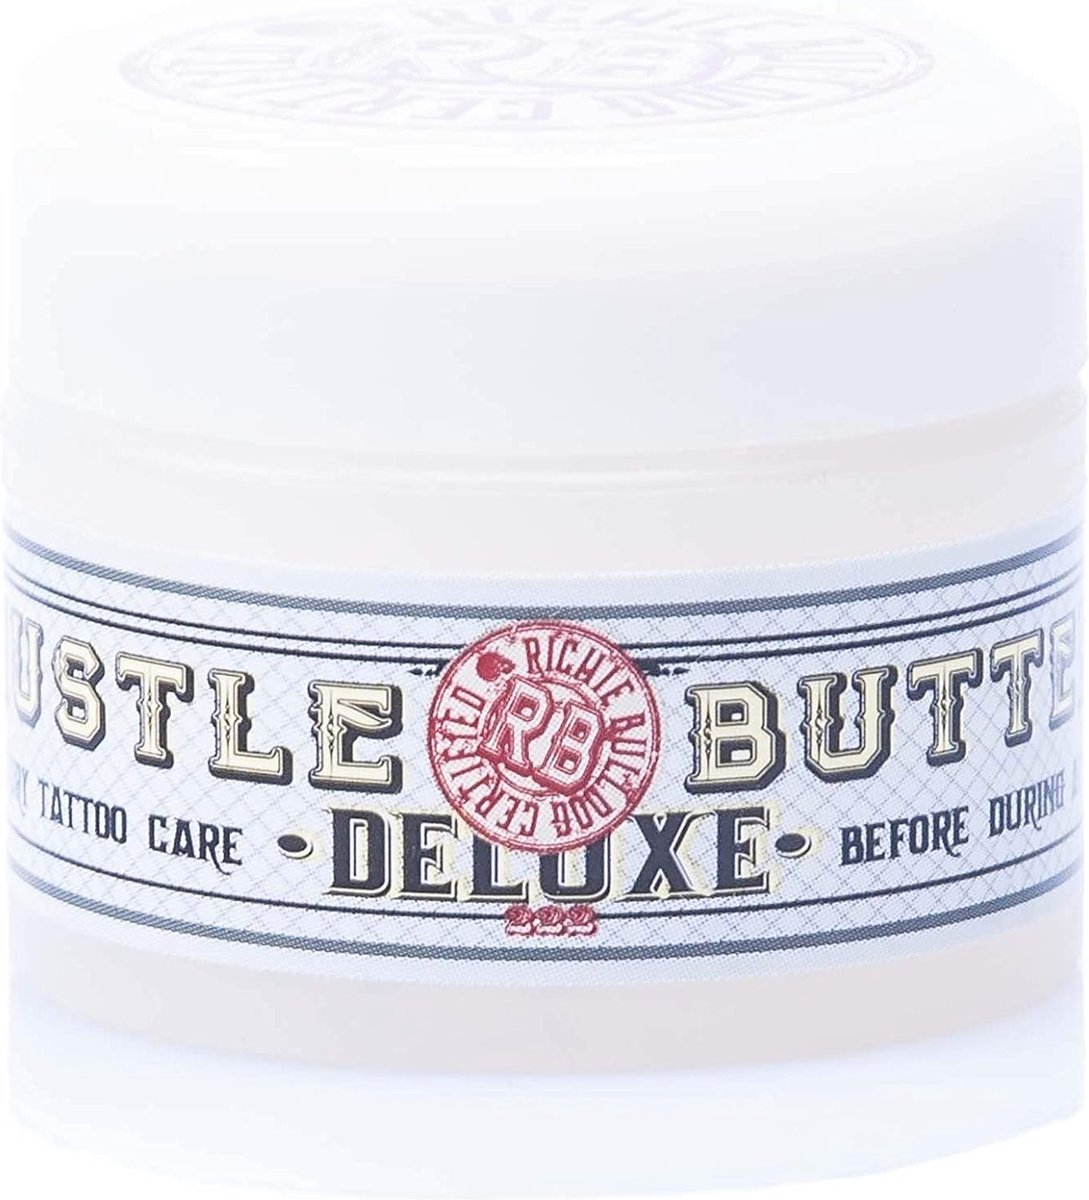 Hustle Butter Deluxe, veganistische tattoo-verzorging 100% natuurlijk, biologisch en veganistisch - 30ml